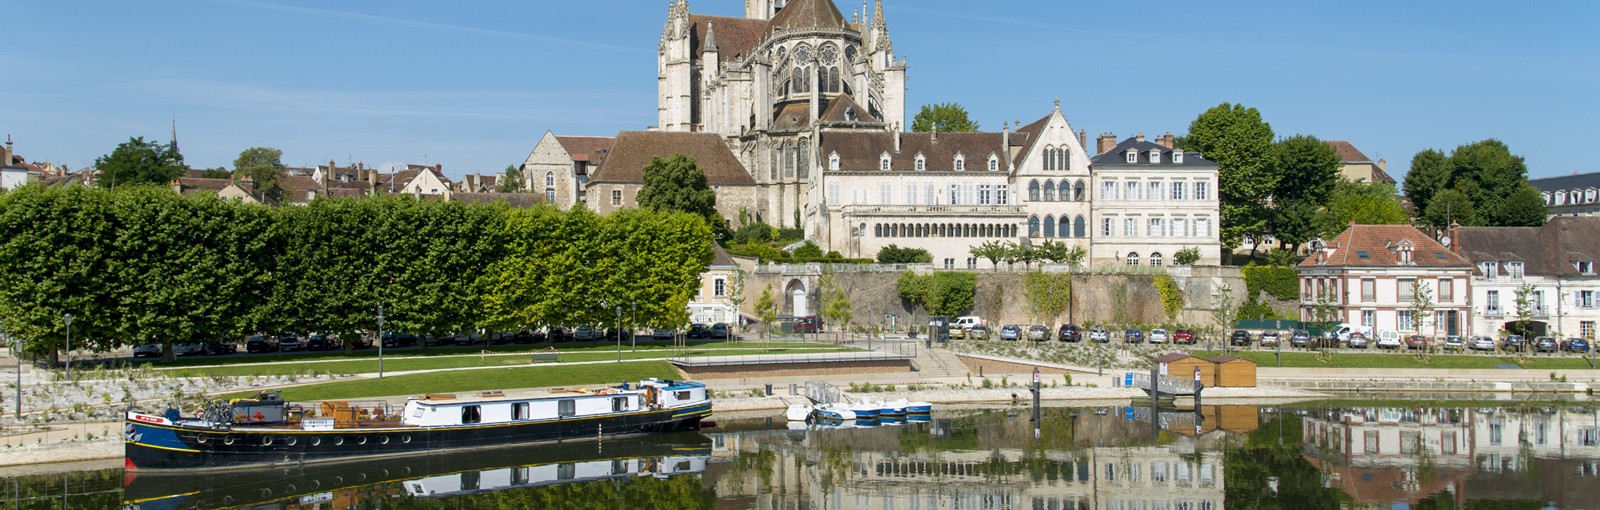 Tours Gran Tour del Yonne - Días completos - Excursiones desde París